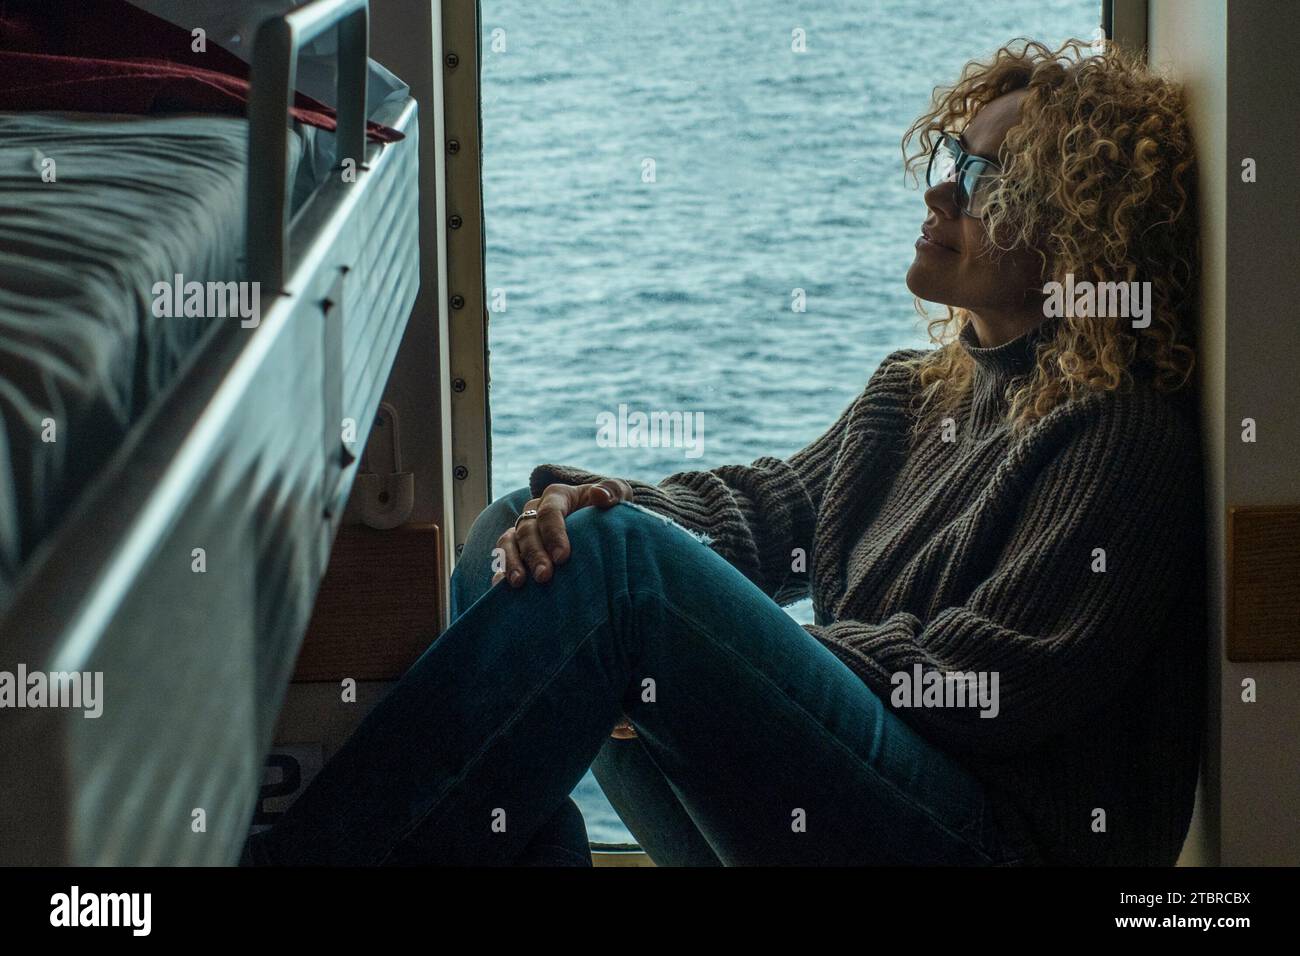 Eine Frau Passagier in der Kabinenboot Kreuzfahrt Fähre, die sich entspannt am Fenster mit Meer im Hintergrund draußen. Freizeitaktivitäten im Schlafzimmer. Menschen- und Reisekonzept. Urlaub. Stockfoto